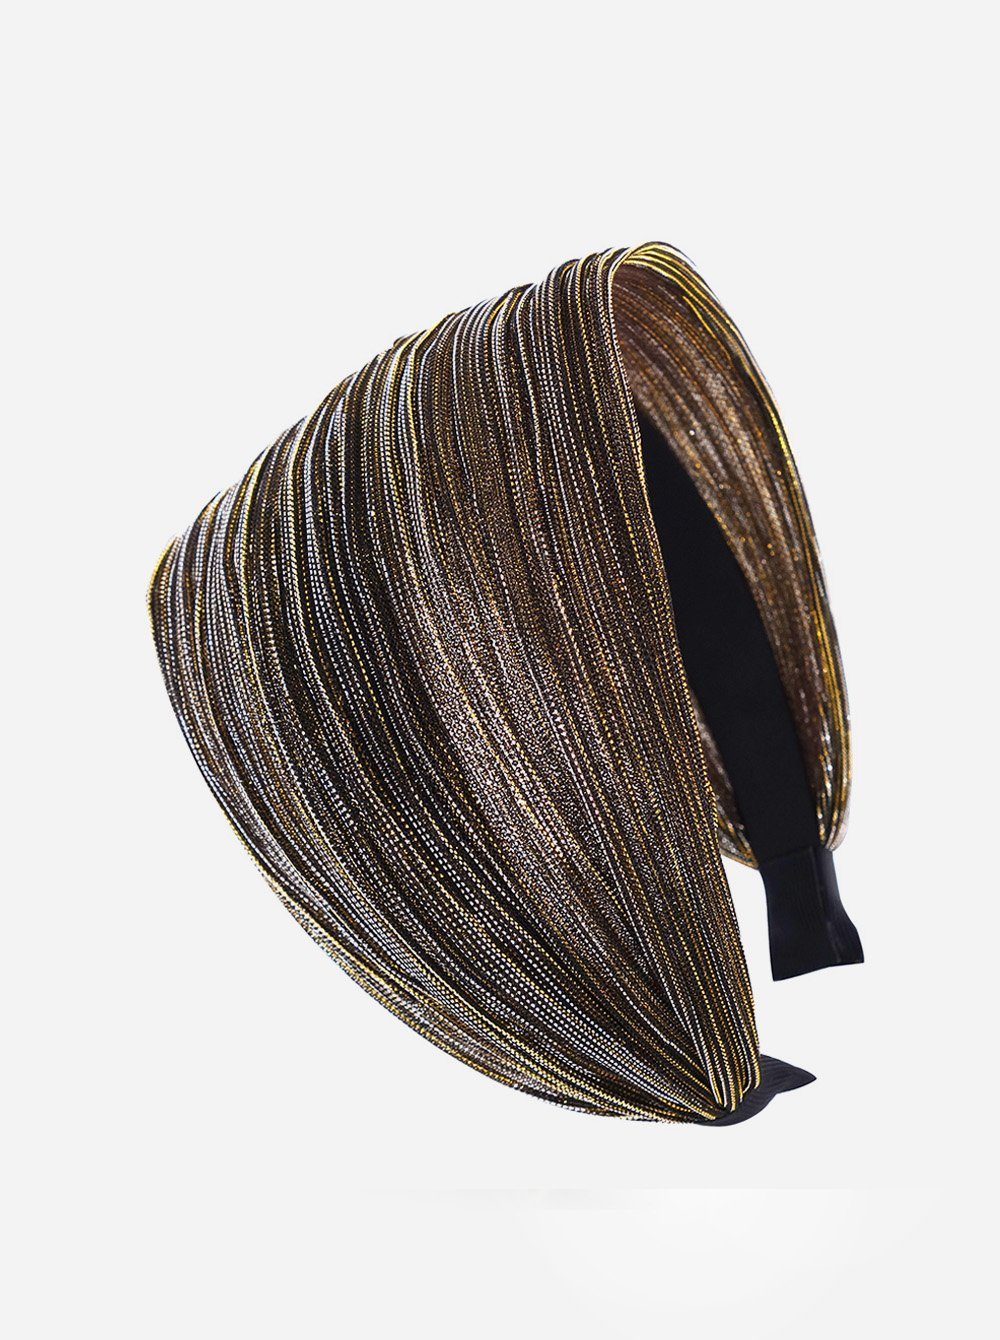 axy Haarreif Breiter Haarreif mit auffallenden Glitzerfäden in Tuchoptik, Damen Breiter Haarreif mit Glitzerfäden Haarband Haarreifen Gold